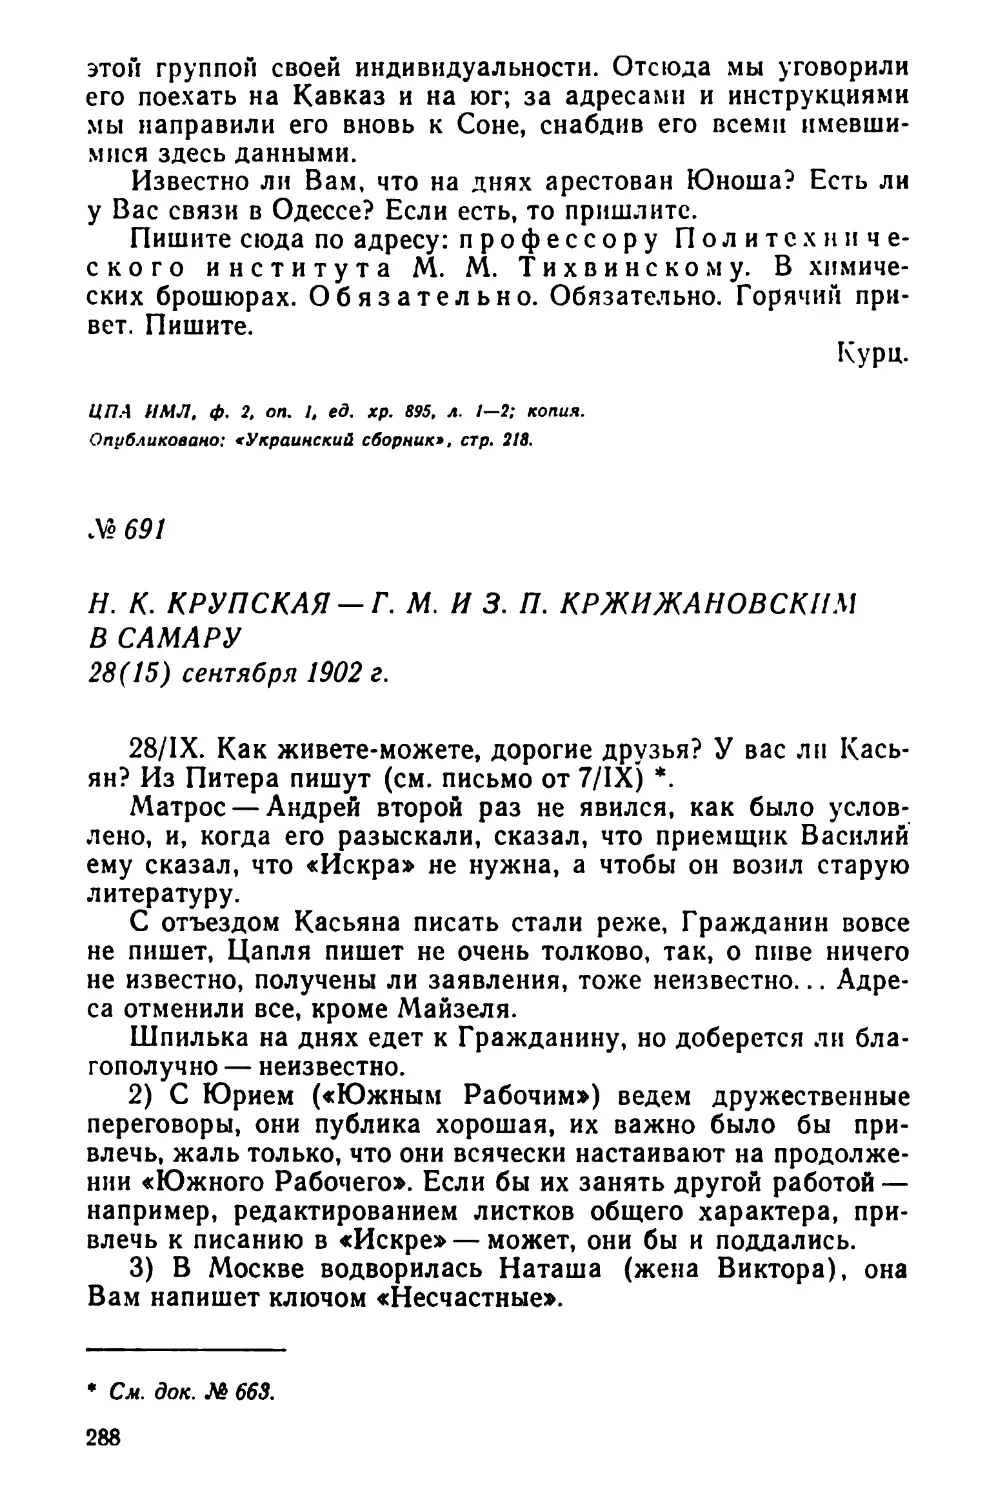 № 691 Н. К. Крупская — Г. М. и 3. П. Кржижановским в Самару. 28 сентября